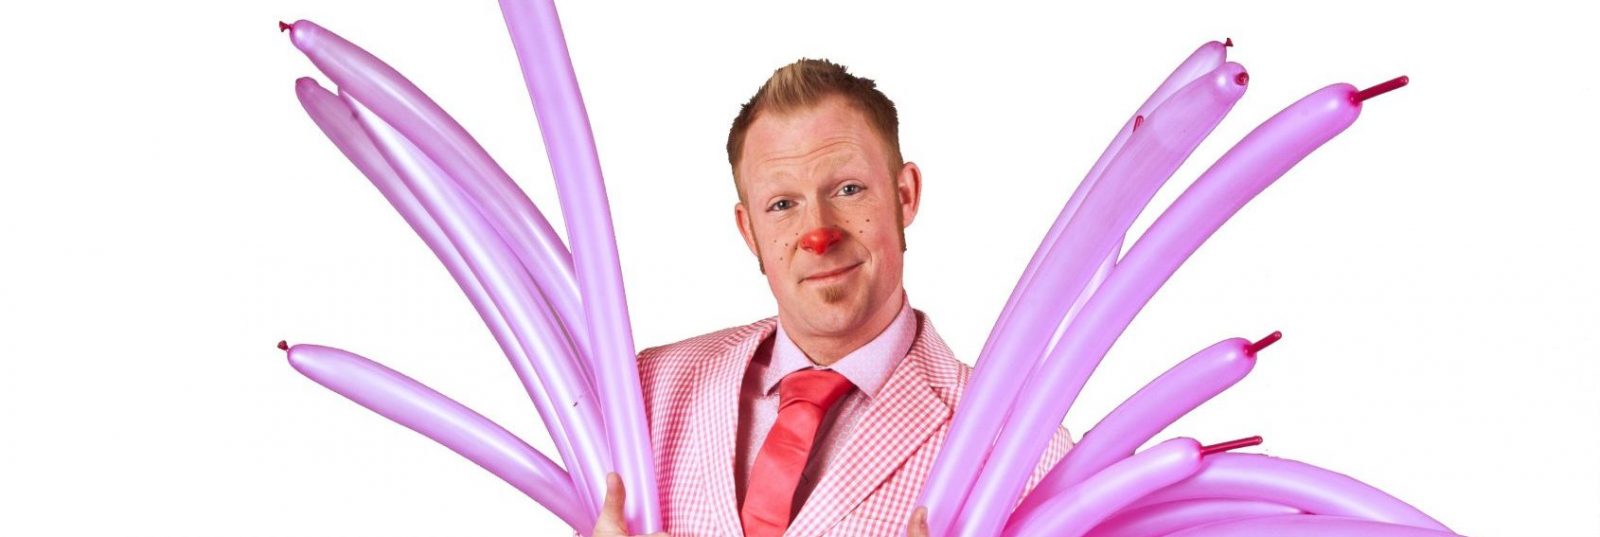 Mr. Pink med balloner - coverbillede